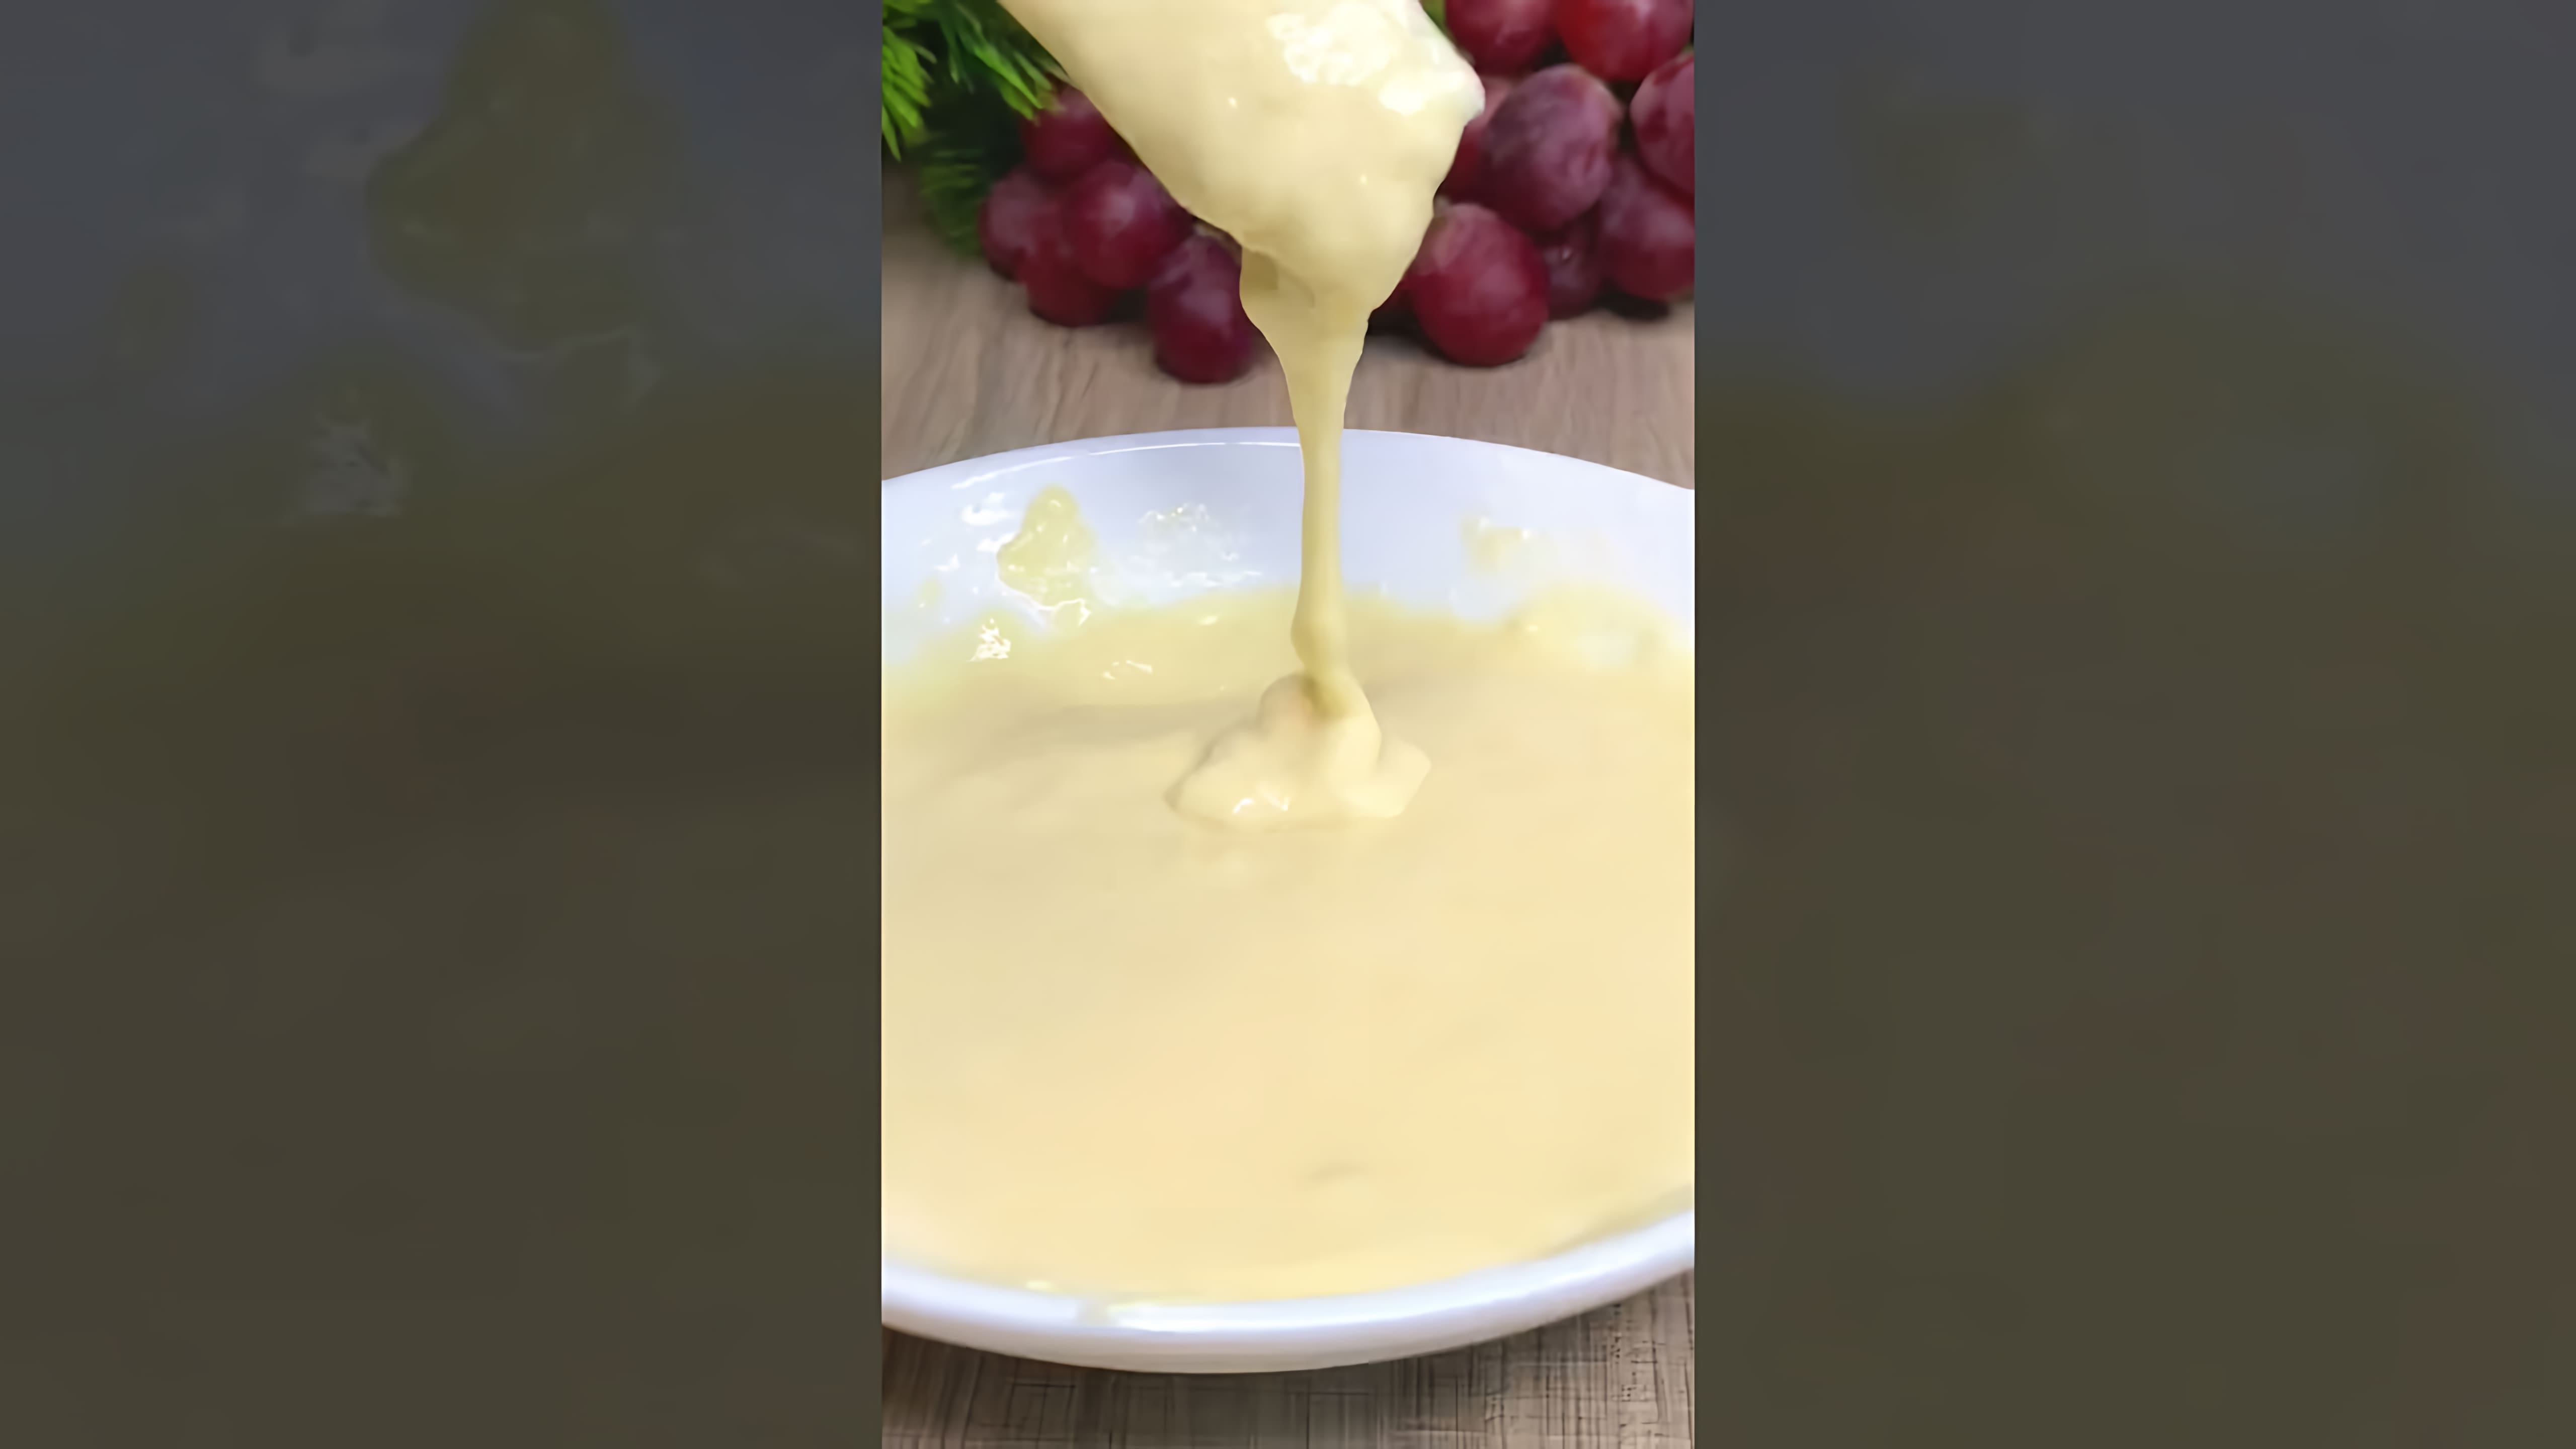 В этом видео демонстрируется быстрый и простой рецепт приготовления сосисок в тесте